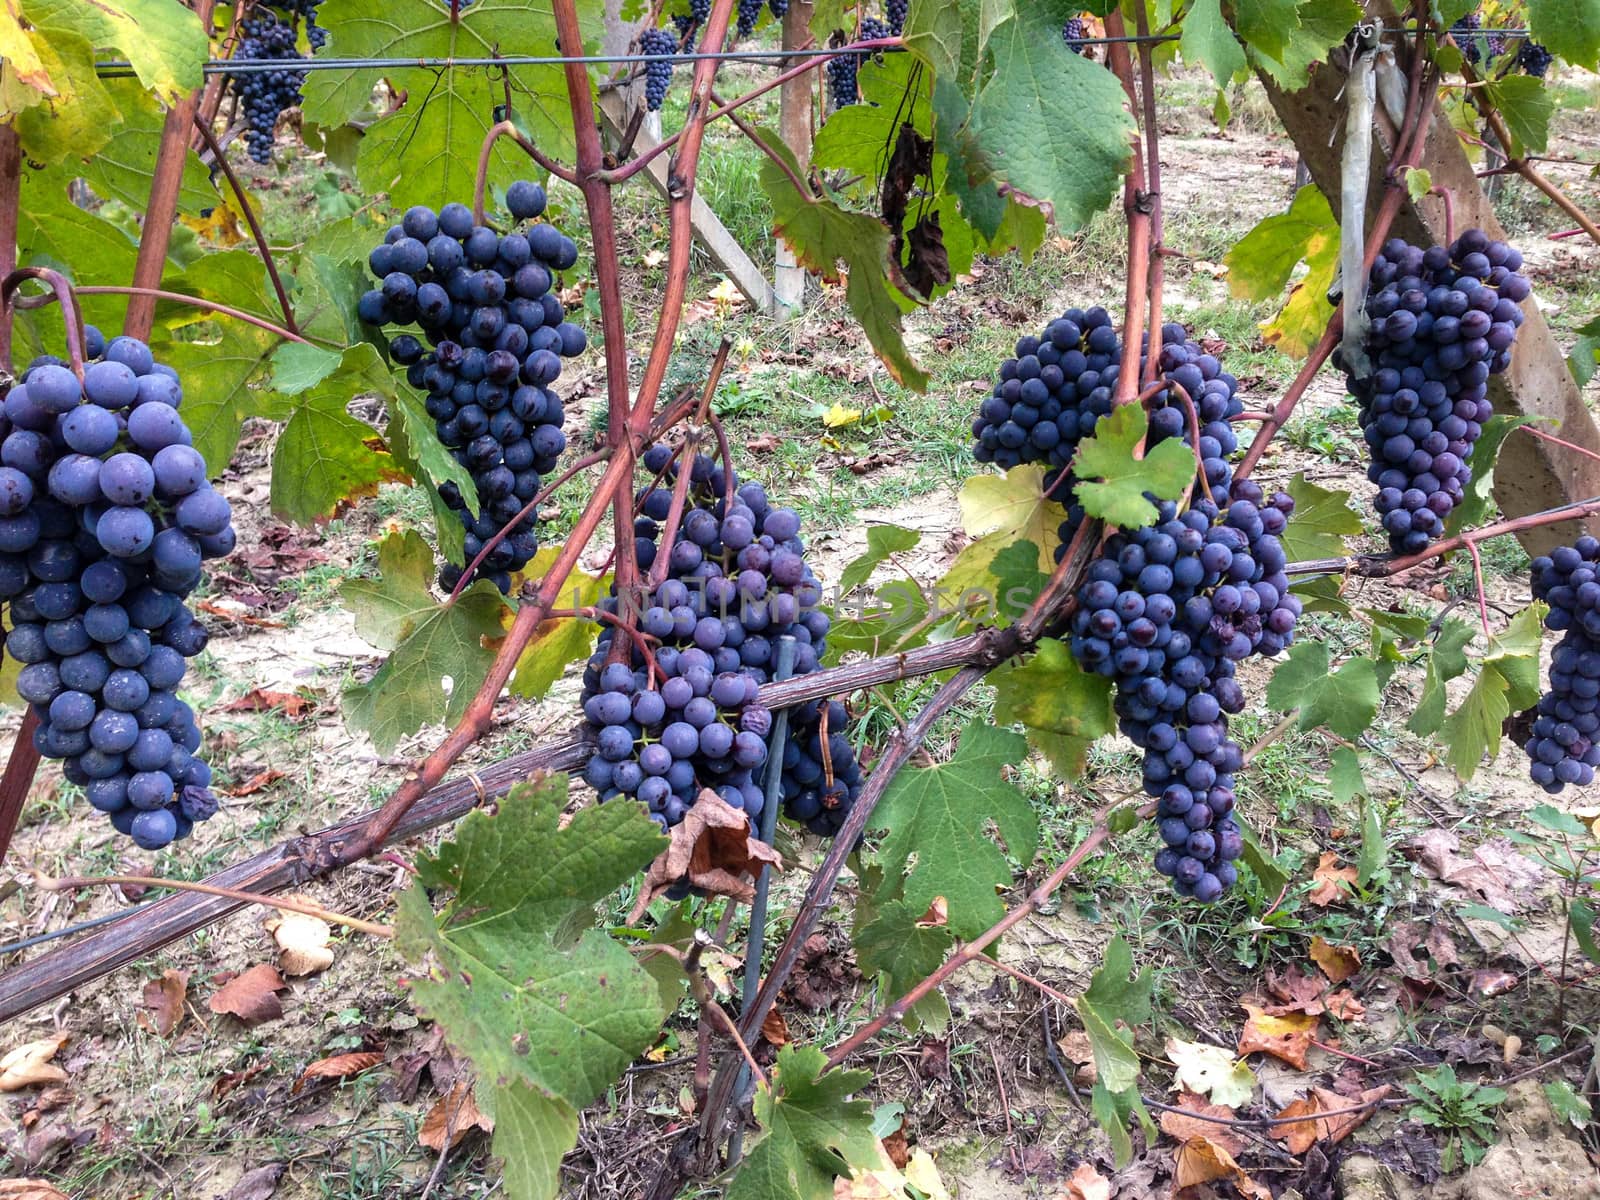 Vineyard of Langhe, Piedmont - Italy